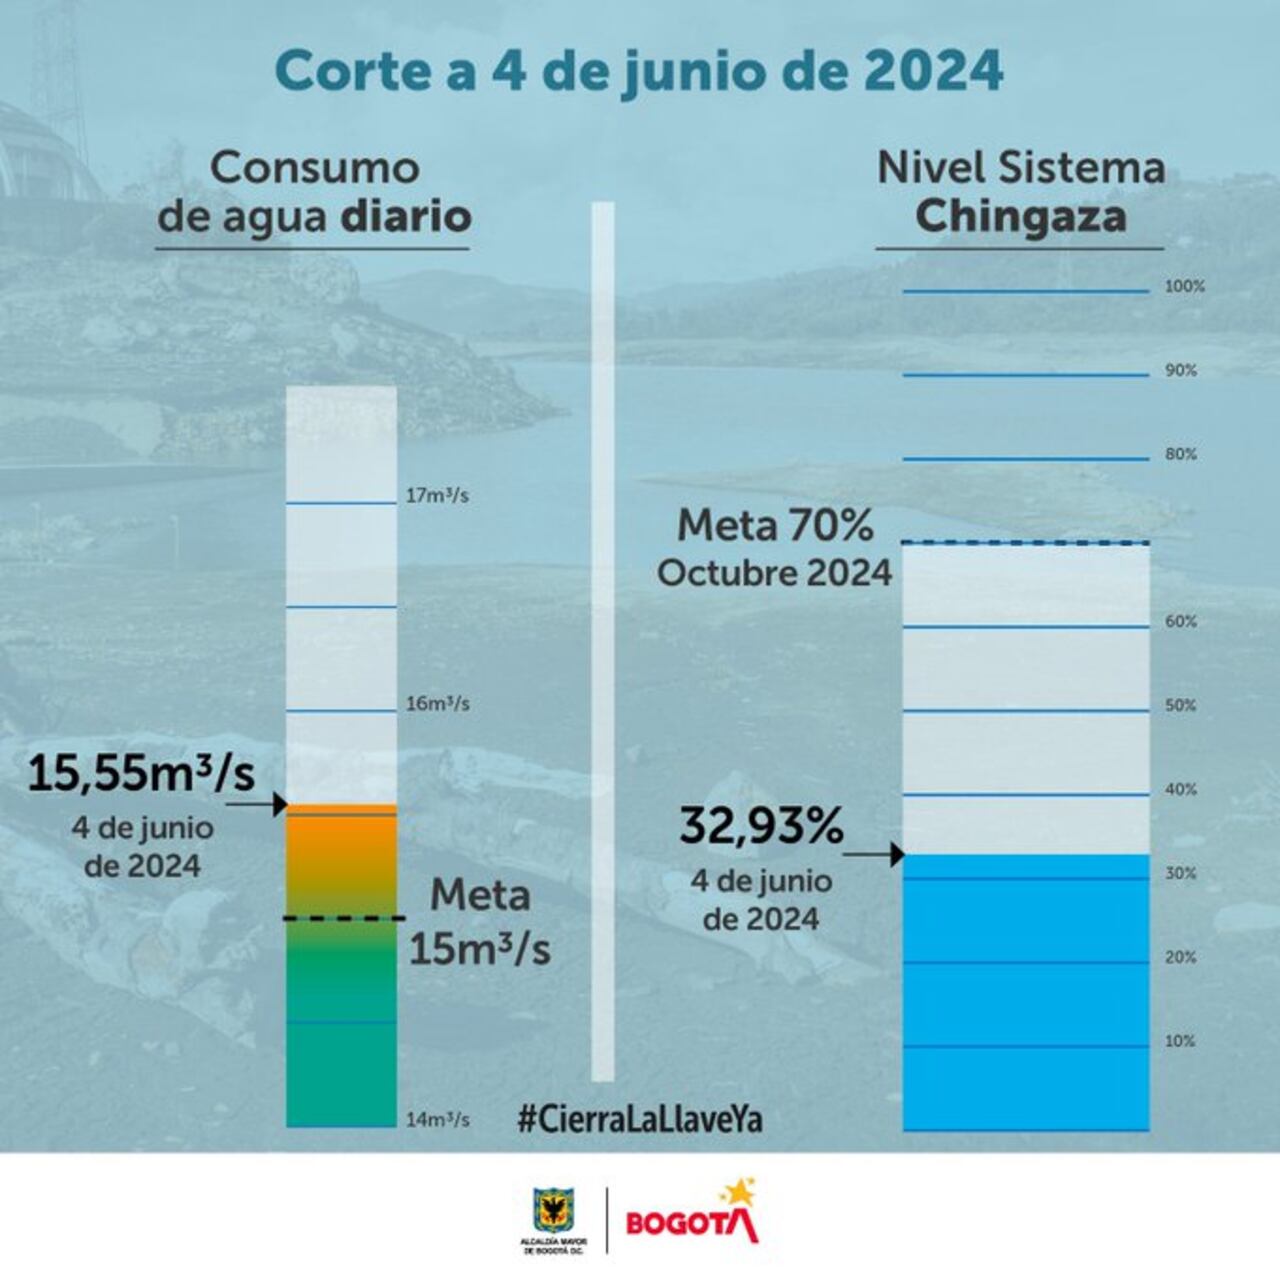 Reporte de la Alcaldía de Bogotá con el consumo de agua correspondiente al martes, 4 de junio de 2024